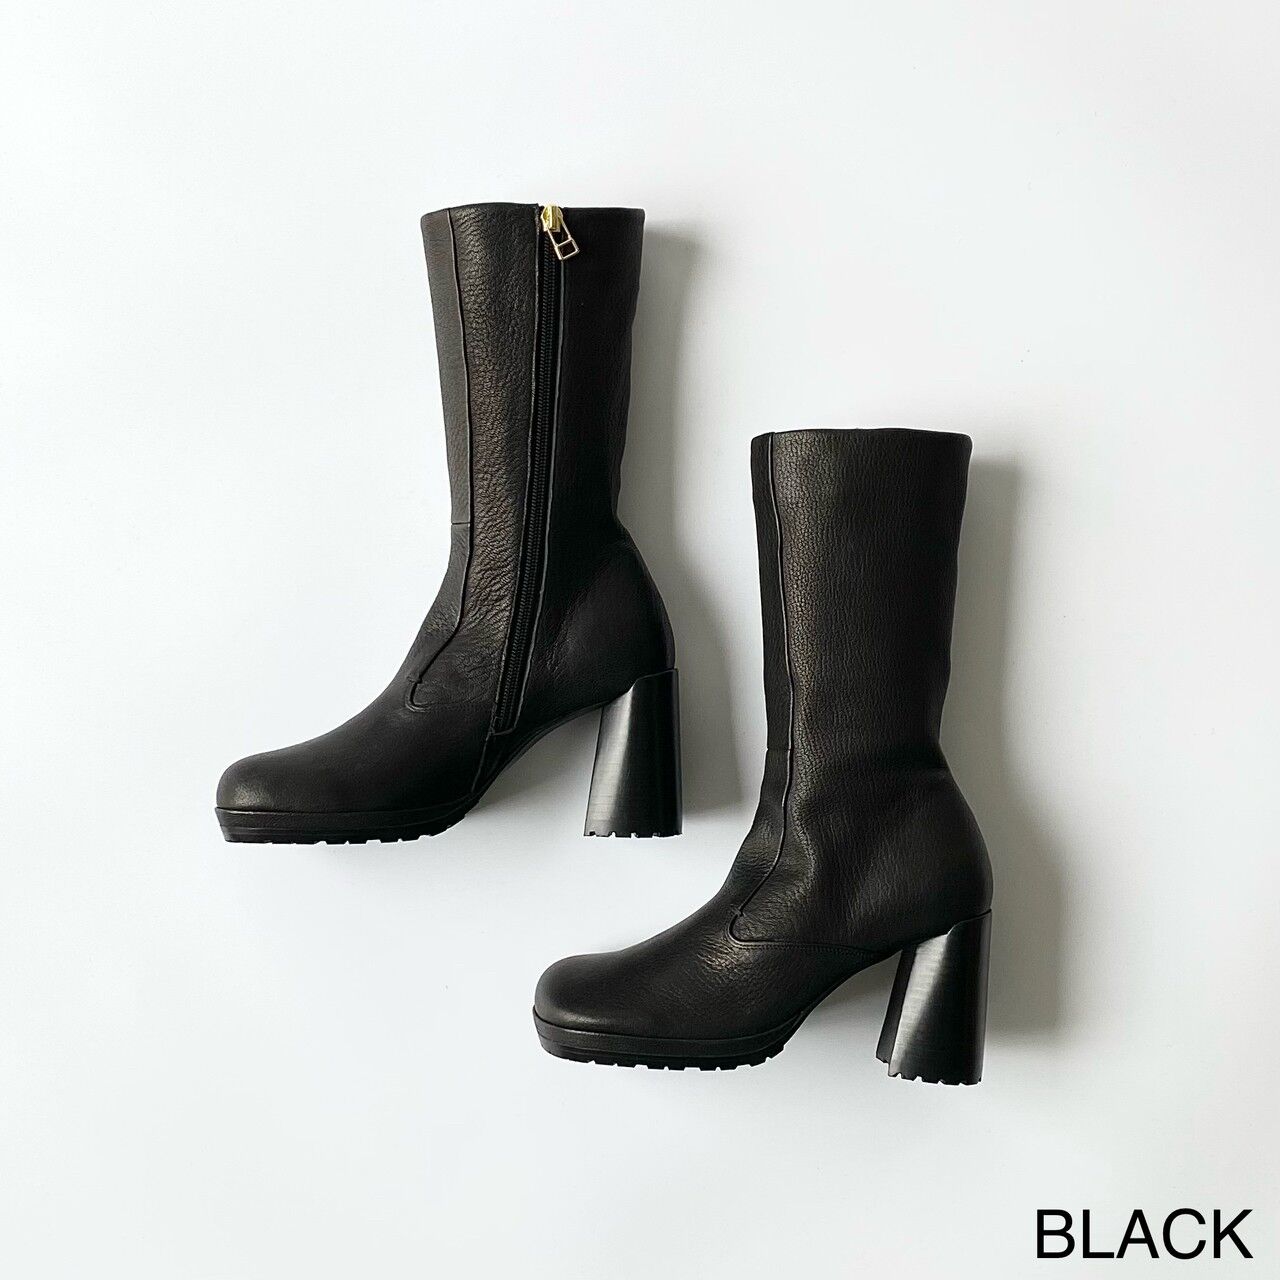 BLACK / 35 (22.5cm)